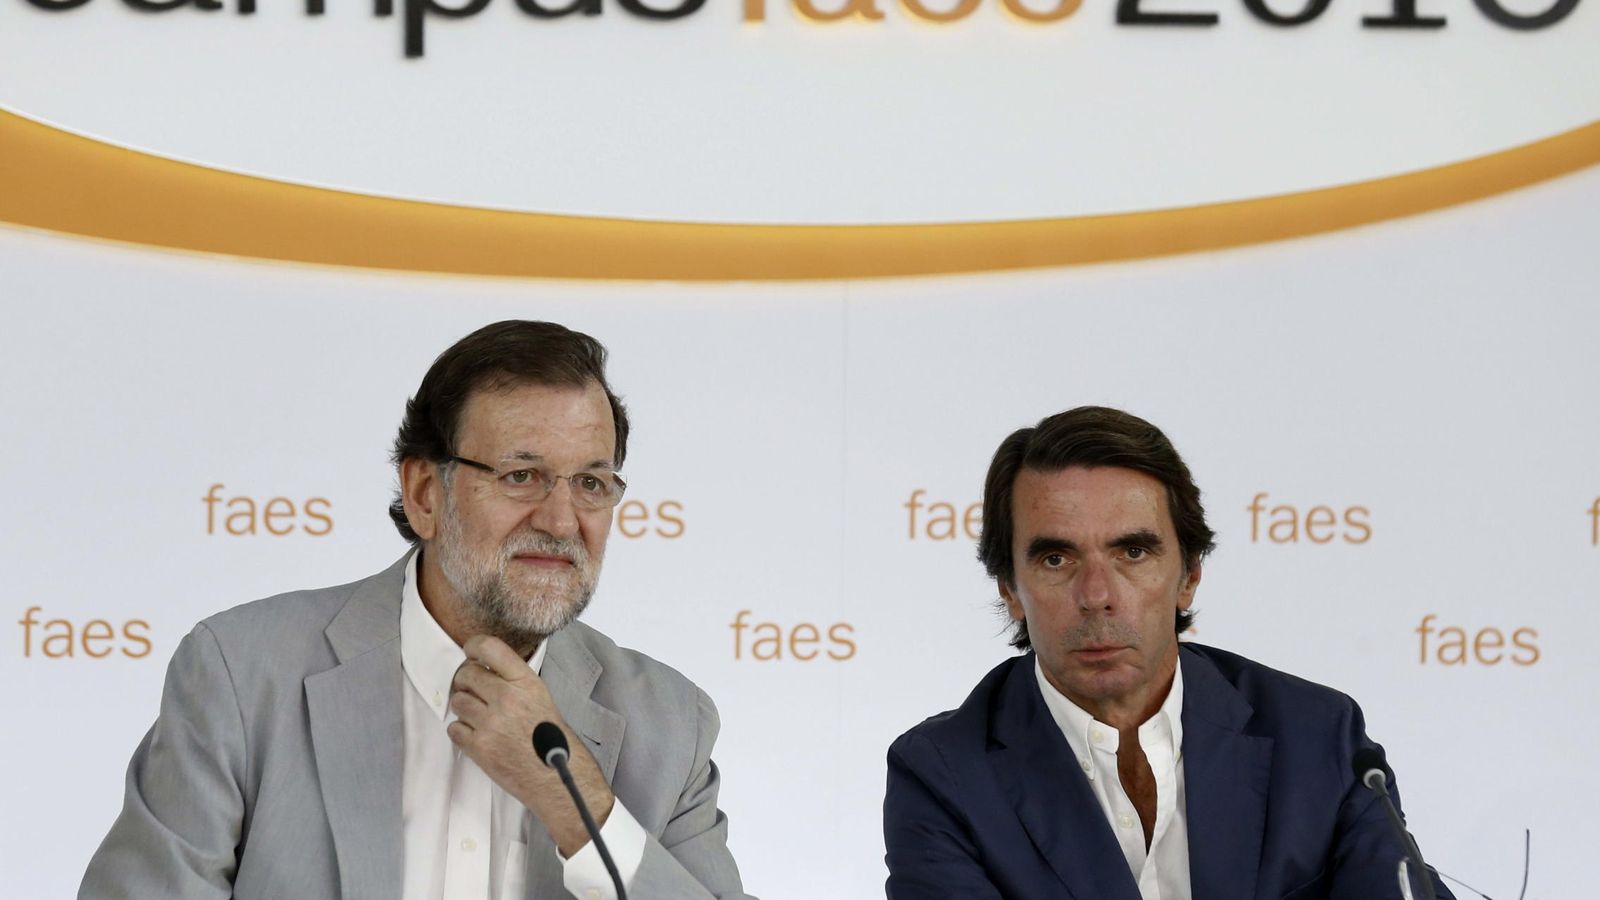 Foto: El presidente del PP, Mariano Rajoy (i), junto al presidente de honor del PP y presidente de Faes, José María Aznar. (EFE)